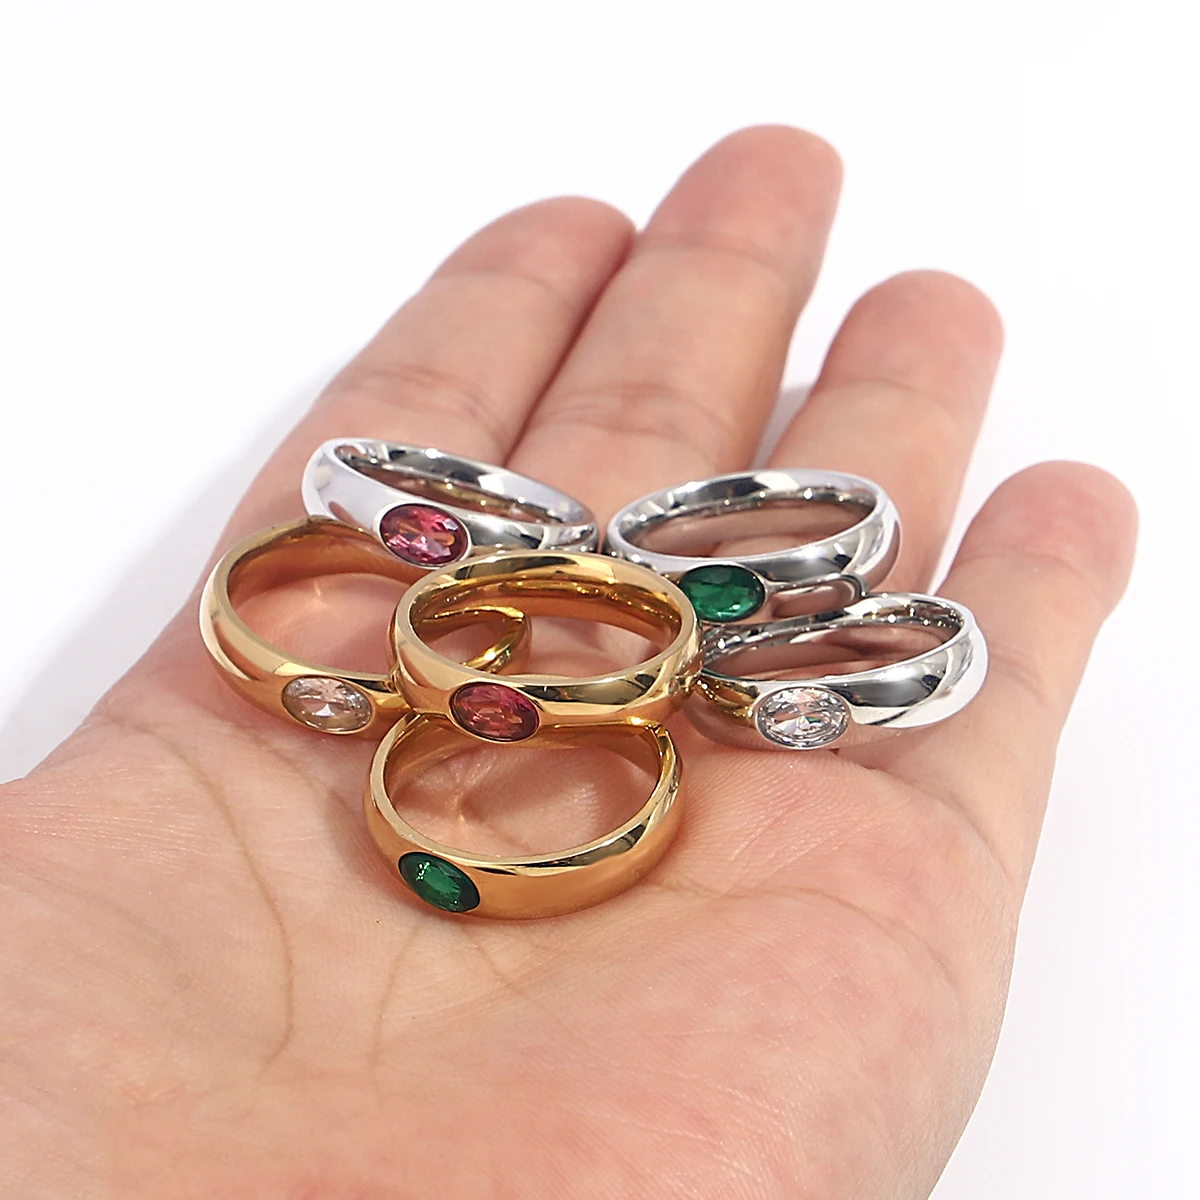 AENSOA, Новые Модные Шикарные Бело-зеленые Красочные кольца из нержавеющей стали со стразами для женщин, Очаровательные Уникальные украшения для безымянных пальцев